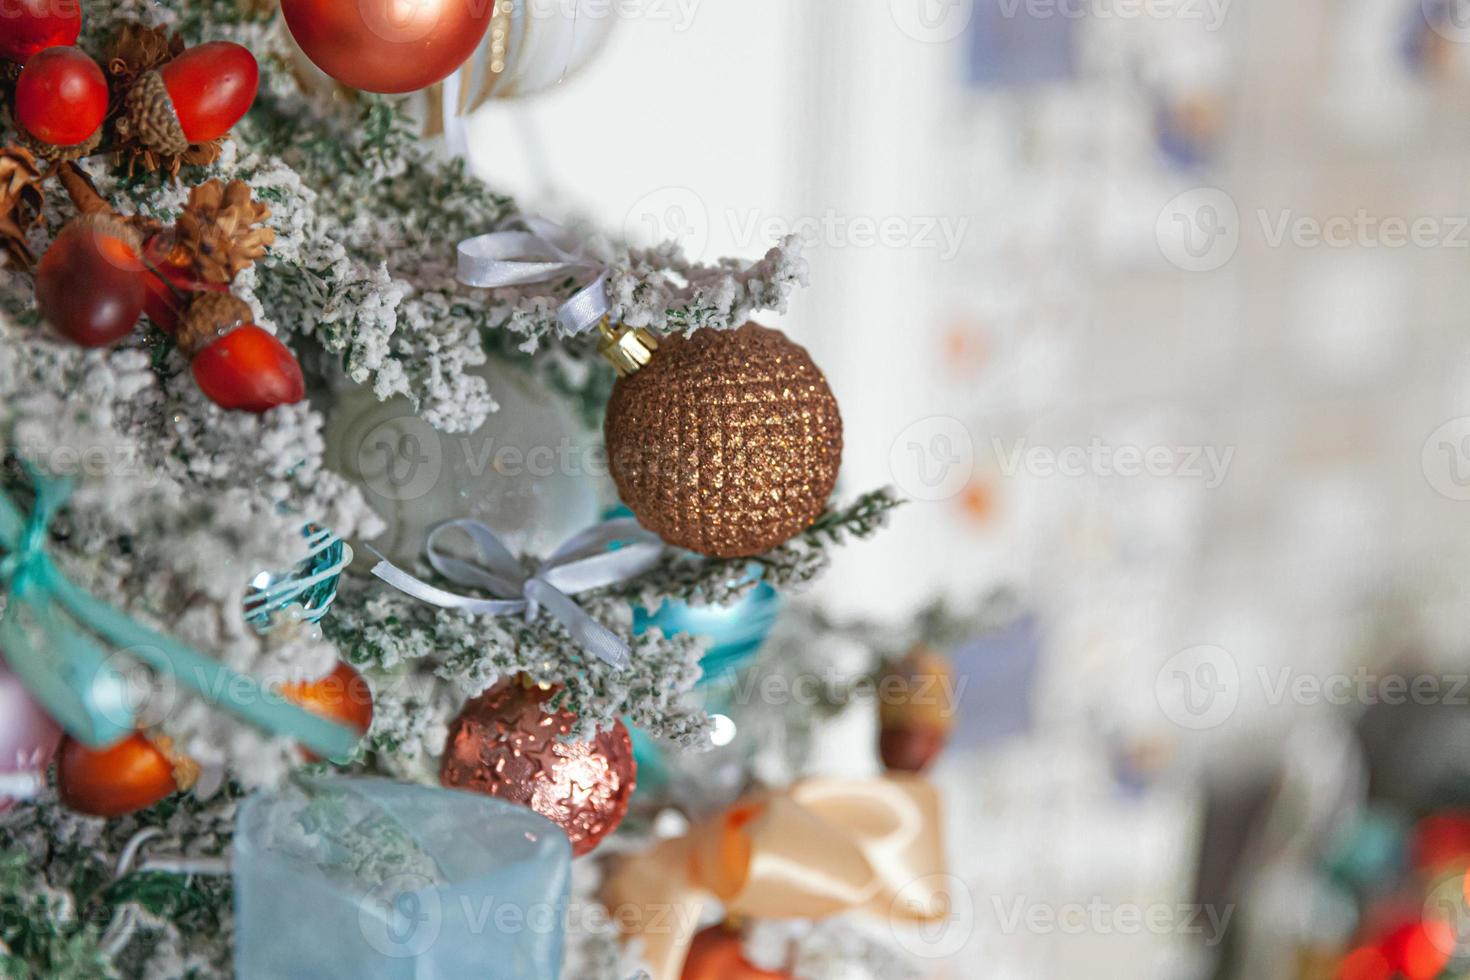 Natal clássico ano novo decorado árvore de ano novo com enfeites de prata e branco brinquedo e bola. apartamento de design de interiores de estilo clássico moderno. véspera de natal em casa. foto